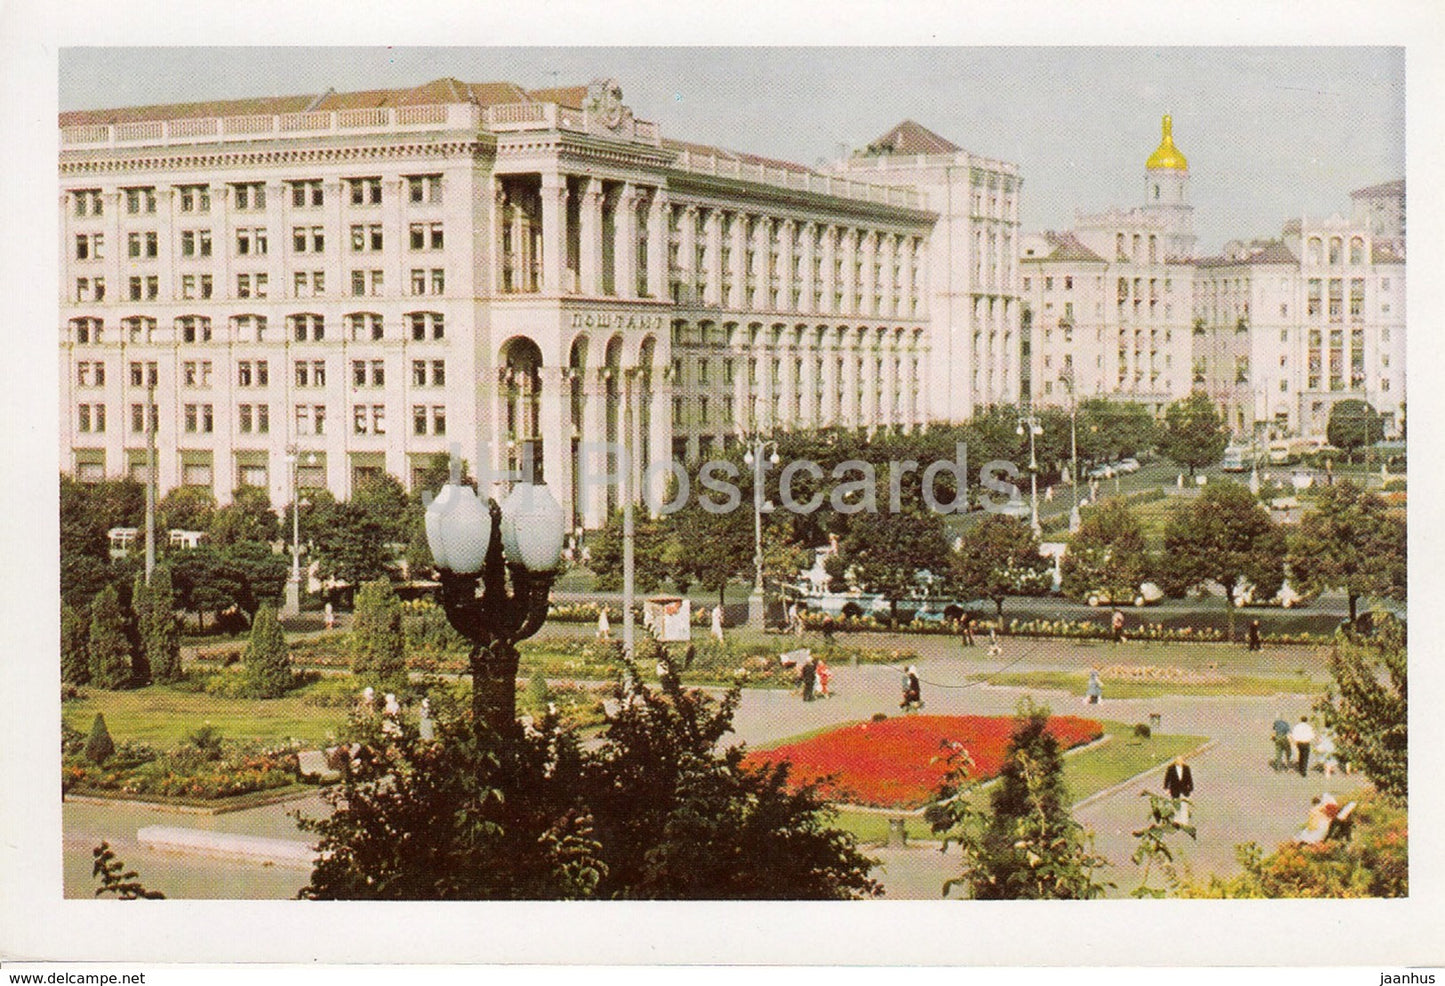 Kyiv - Kiev - The Cenral Post Office - Ukraine USSR - unused - JH Postcards